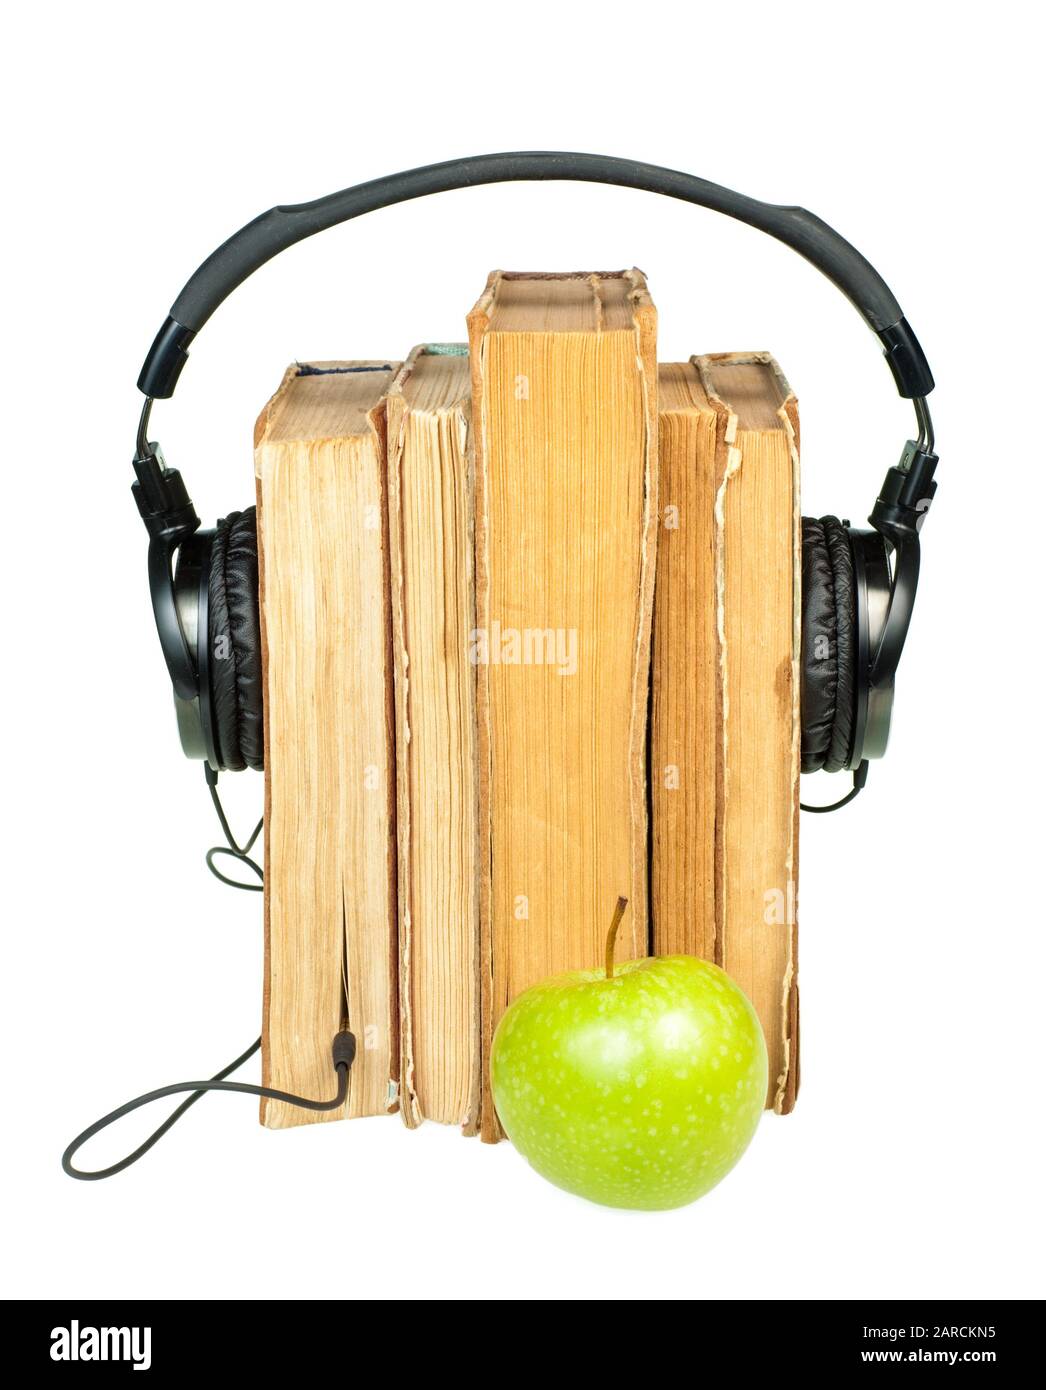 HI-Fi cuffie sulla pila di libri vecchi con mela verde su sfondo bianco Foto Stock